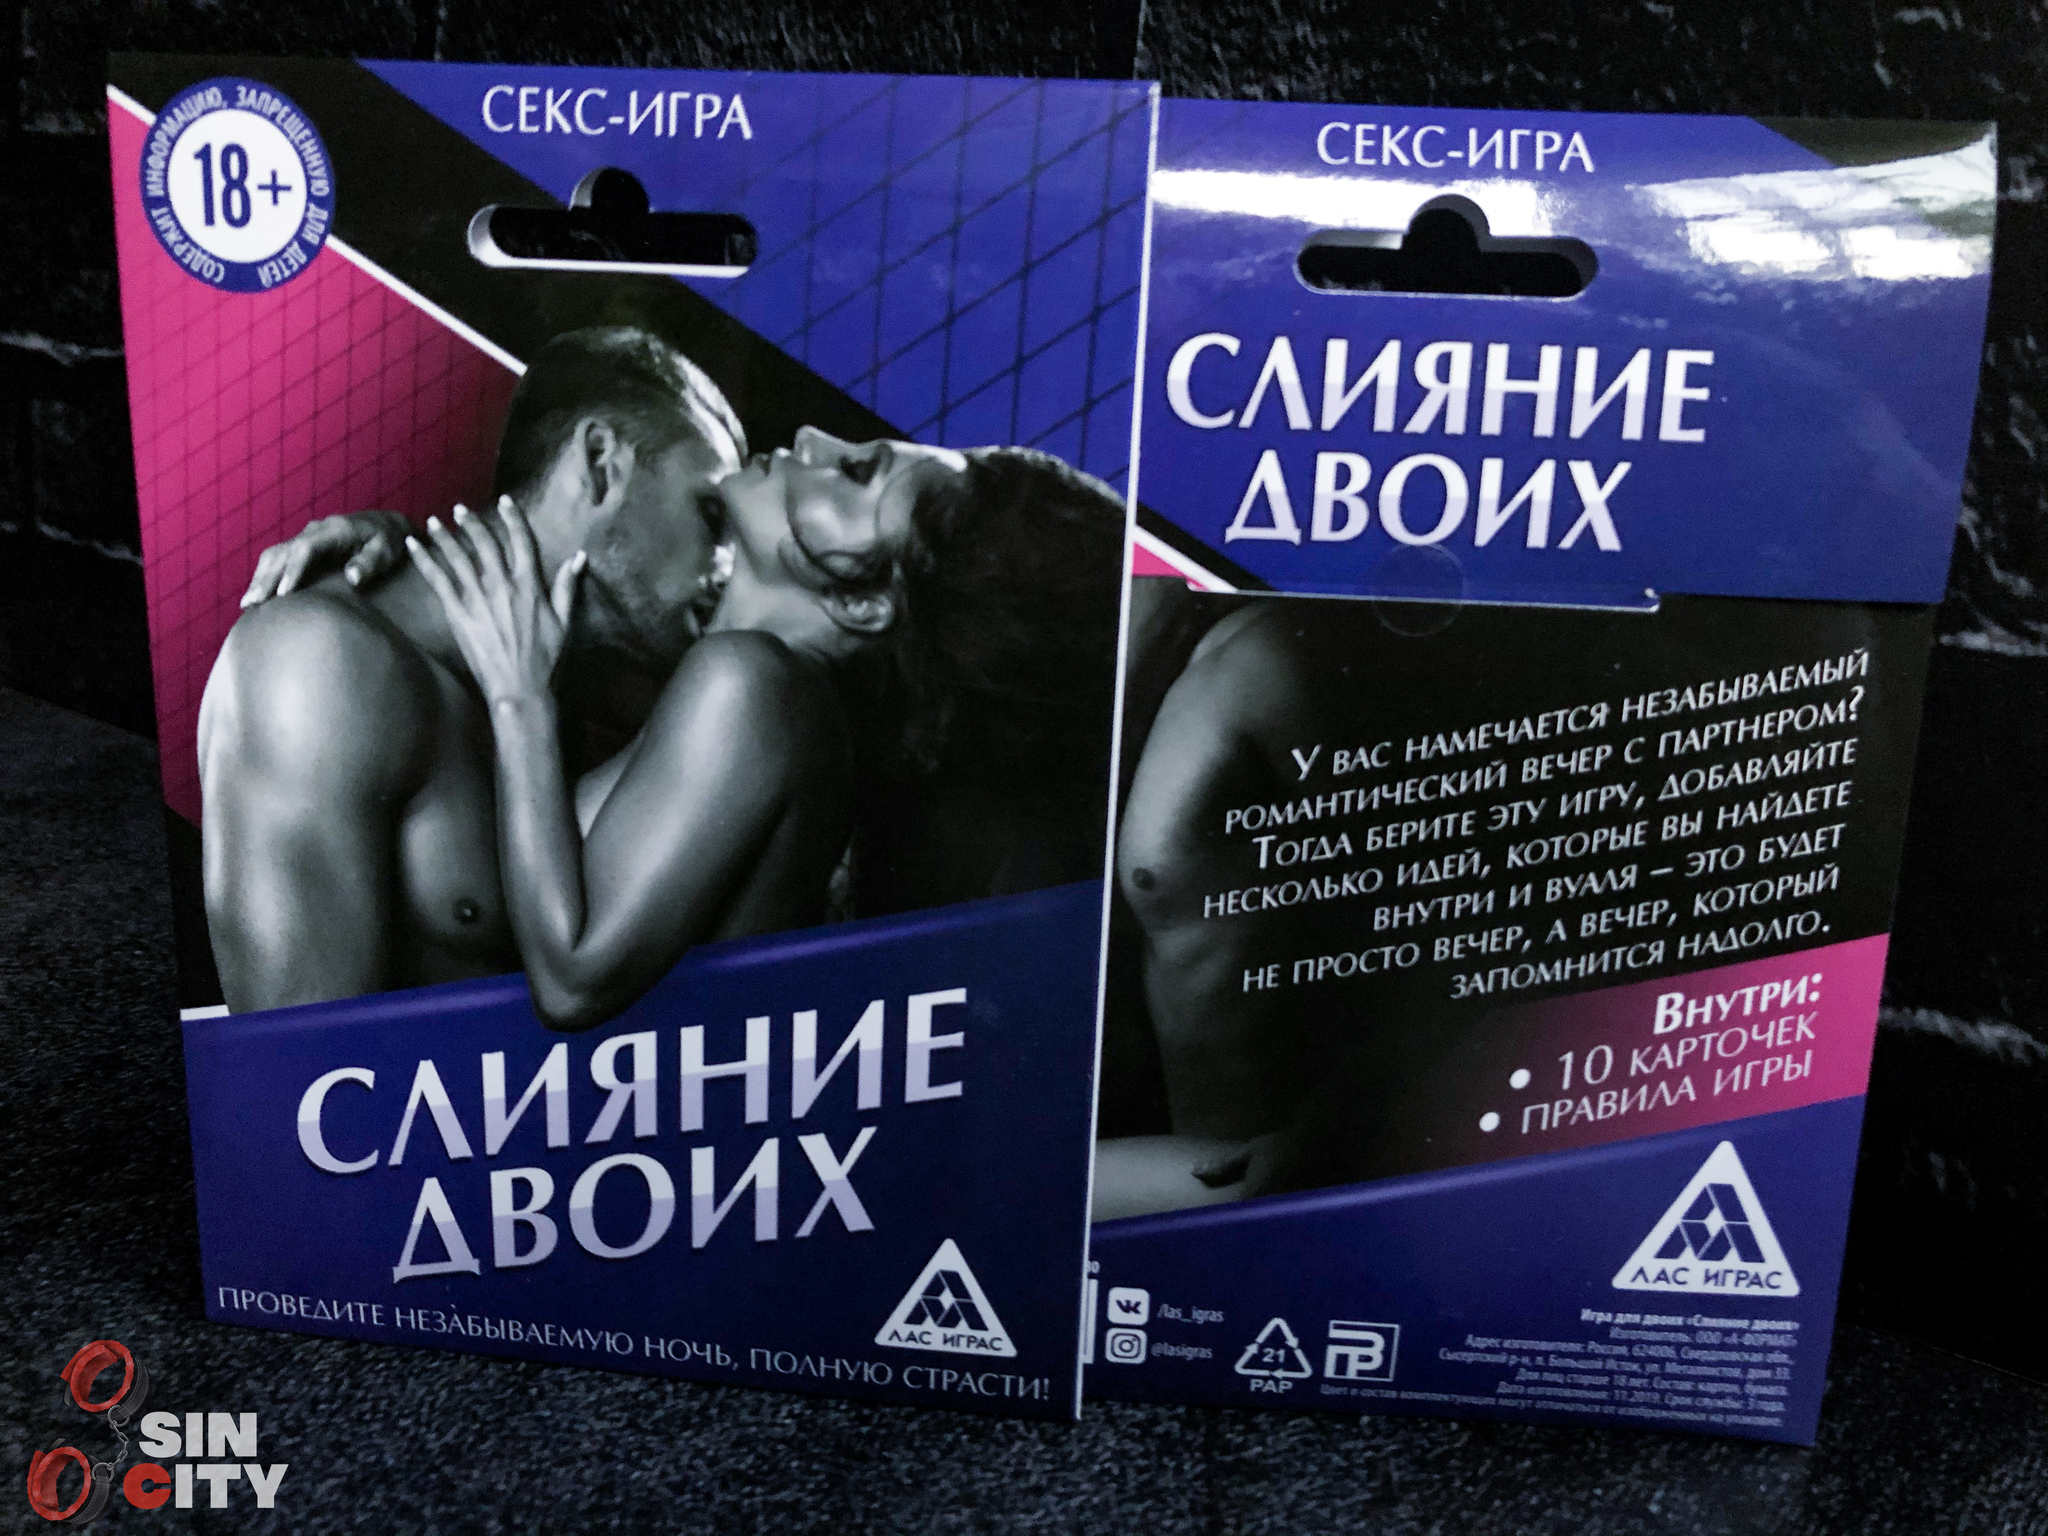 Секс-игра «Слияние двоих» – купить в интернет-магазине, цена, заказ online